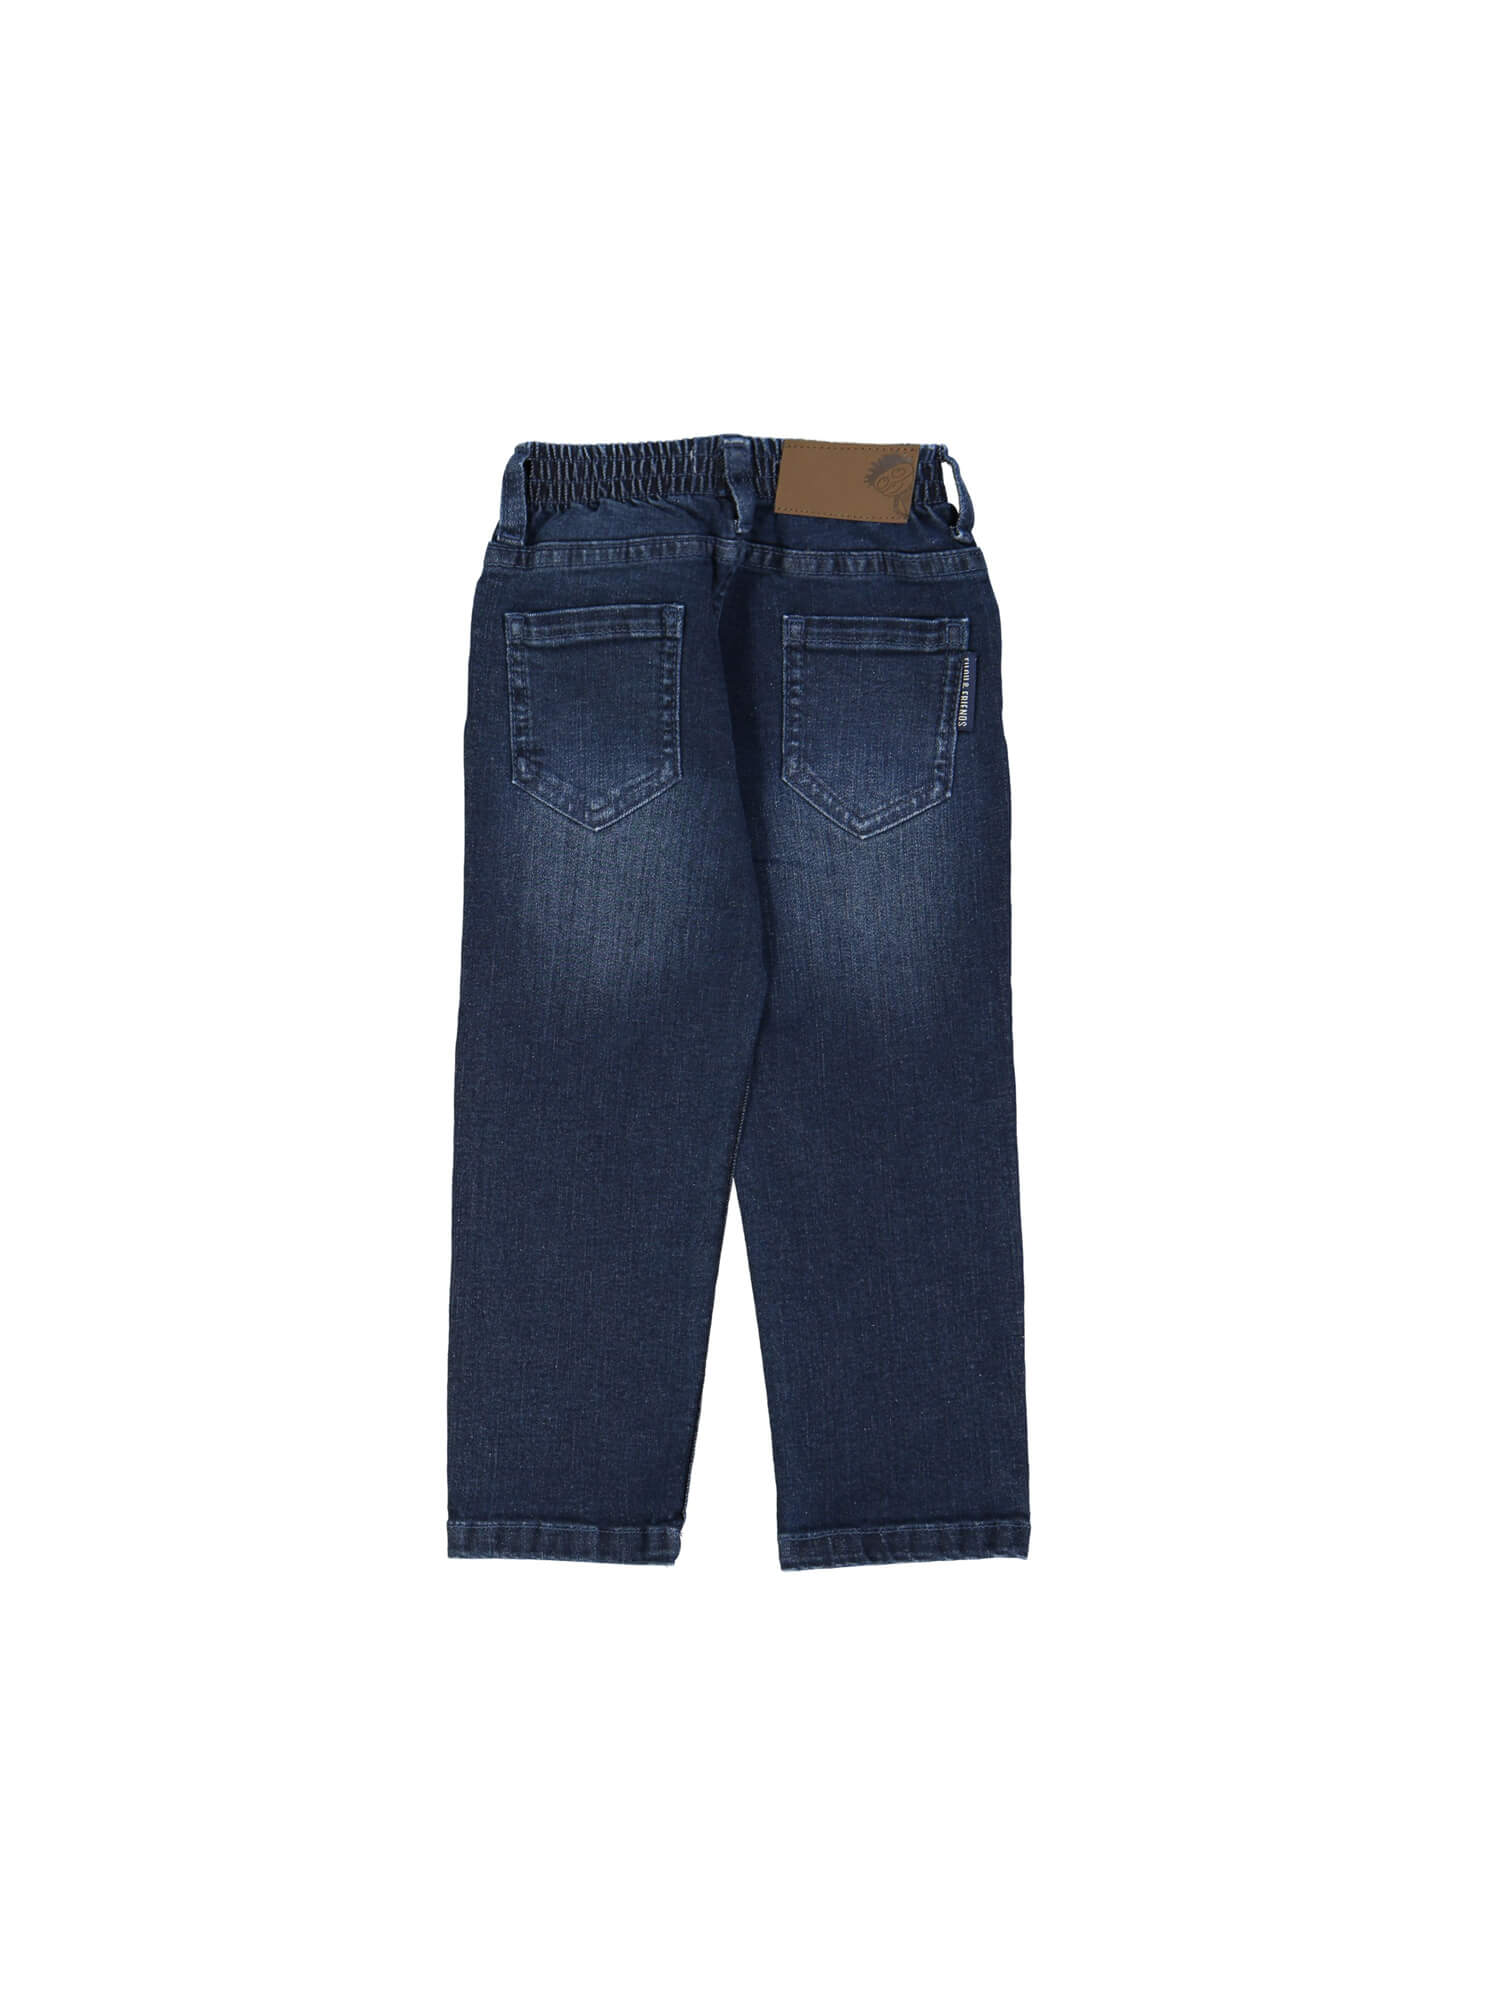 broek regular jeans blauw 09j